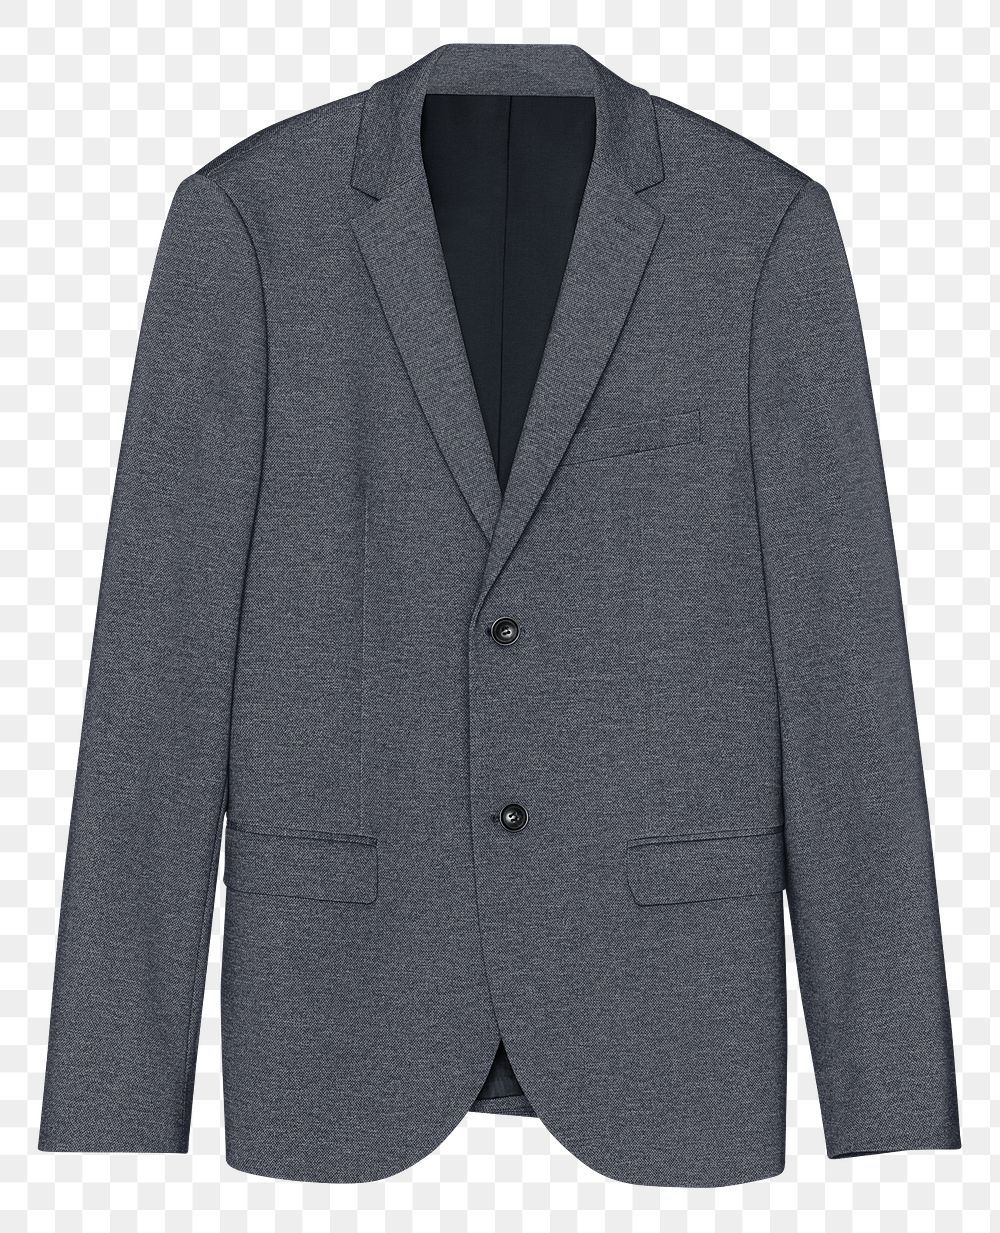 Men's gray suit png sticker, business attire design, transparent background